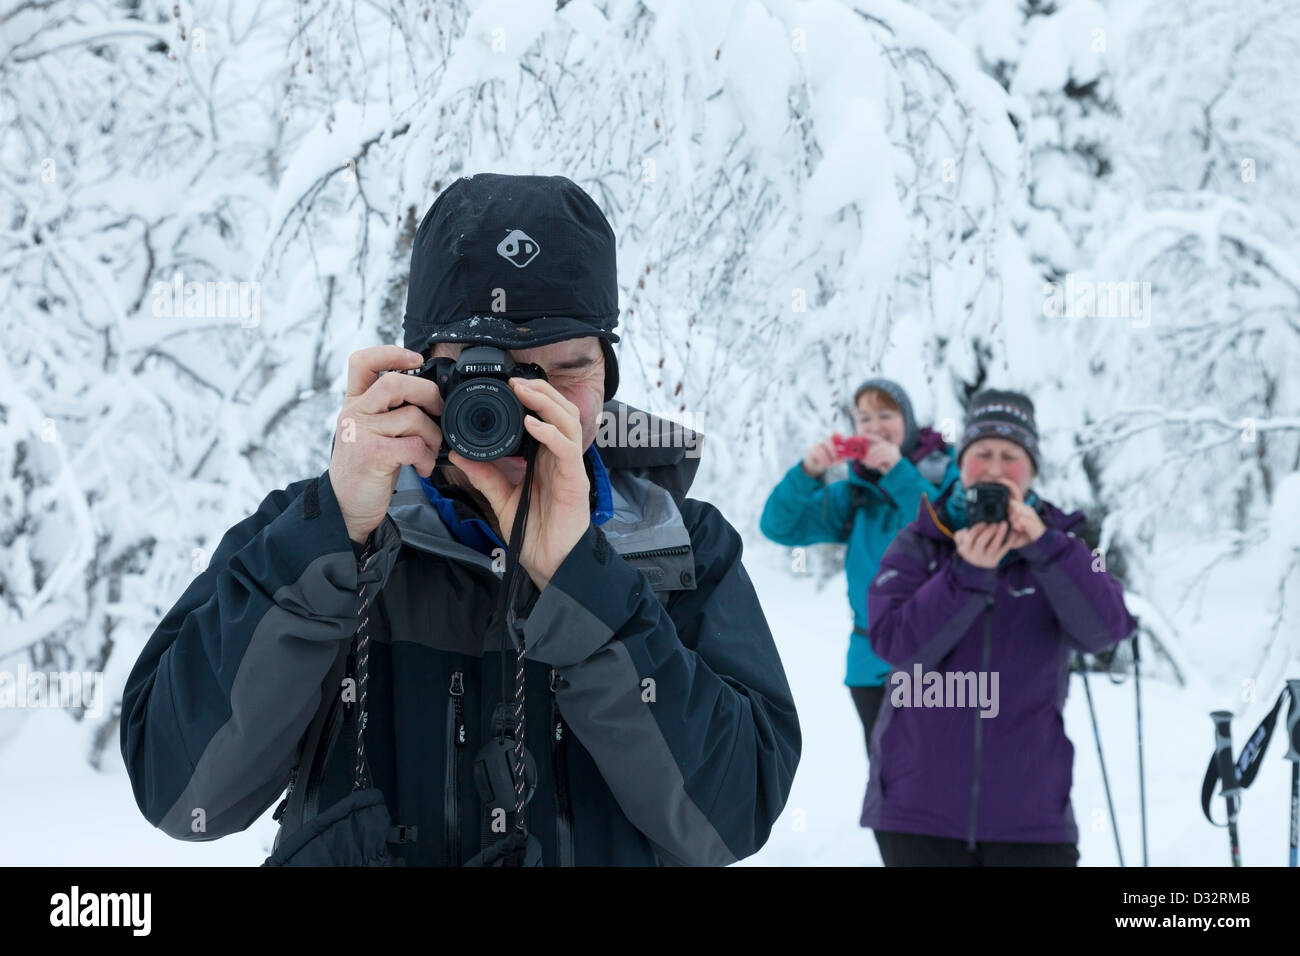 Drei Personen Fotografieren im Schnee während des Urlaubs Stockfoto